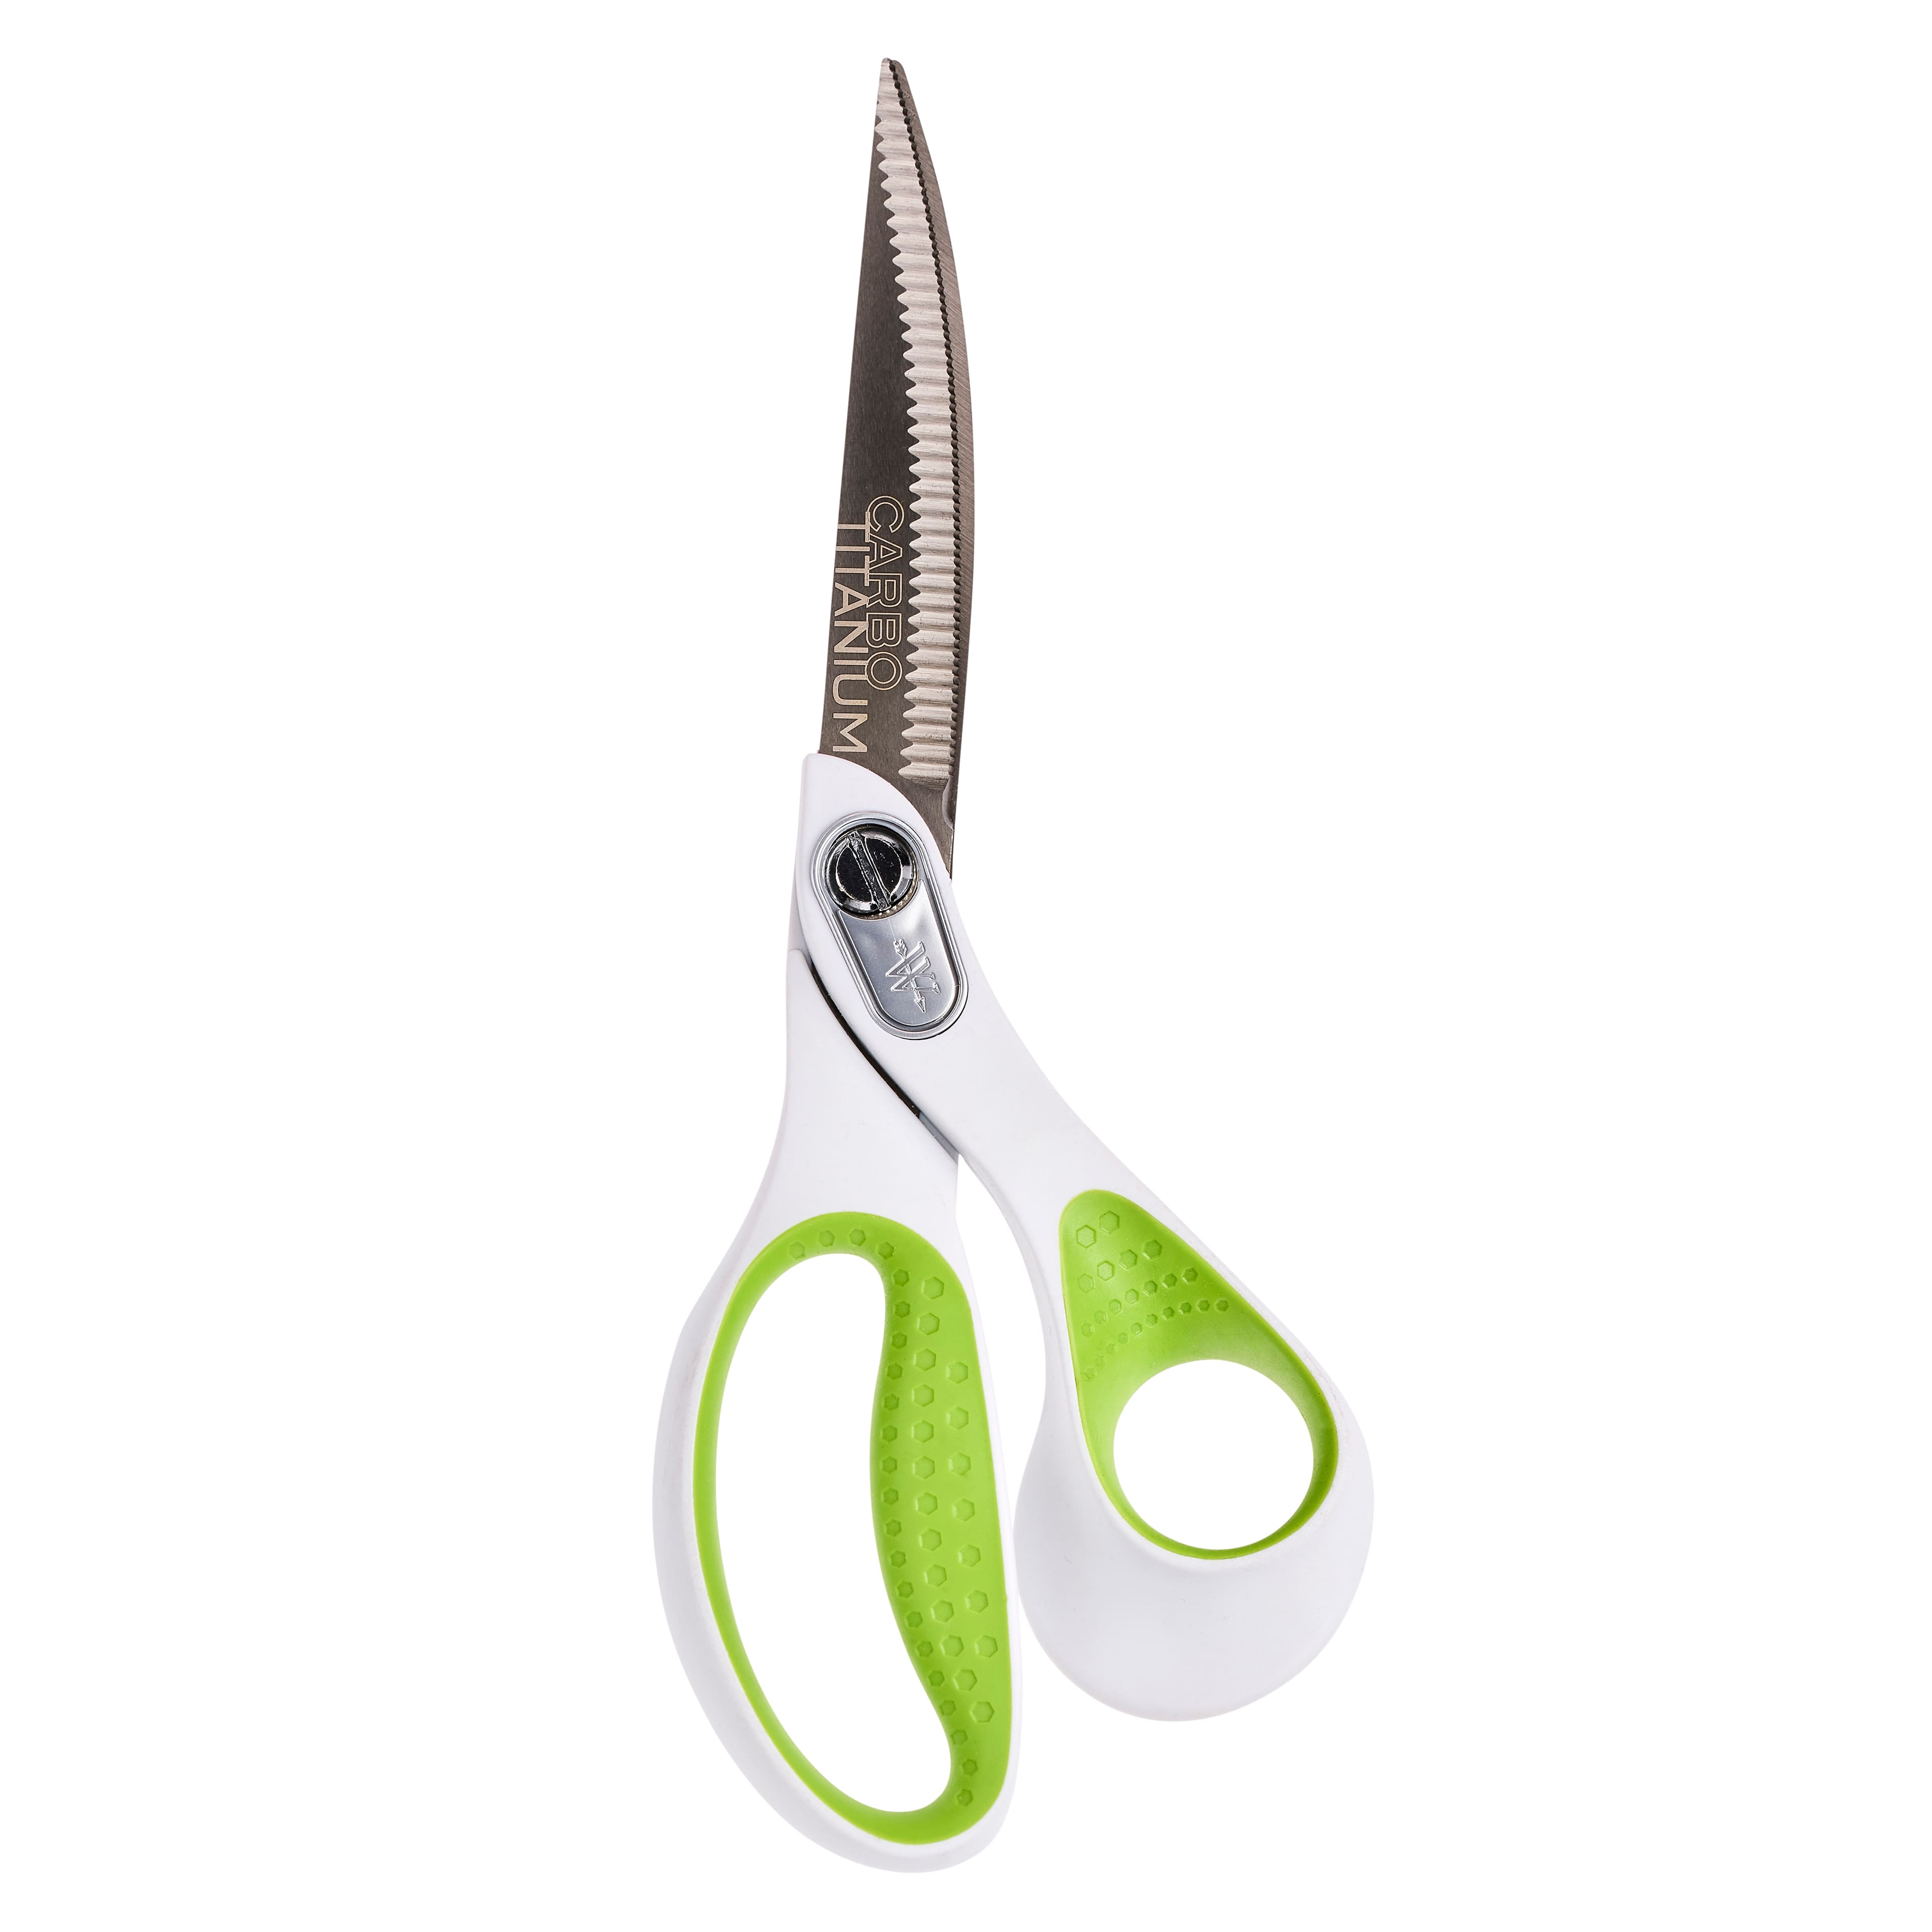 Westcott® Carbo Titanium 9 Bent Scissors with Serrated Blade